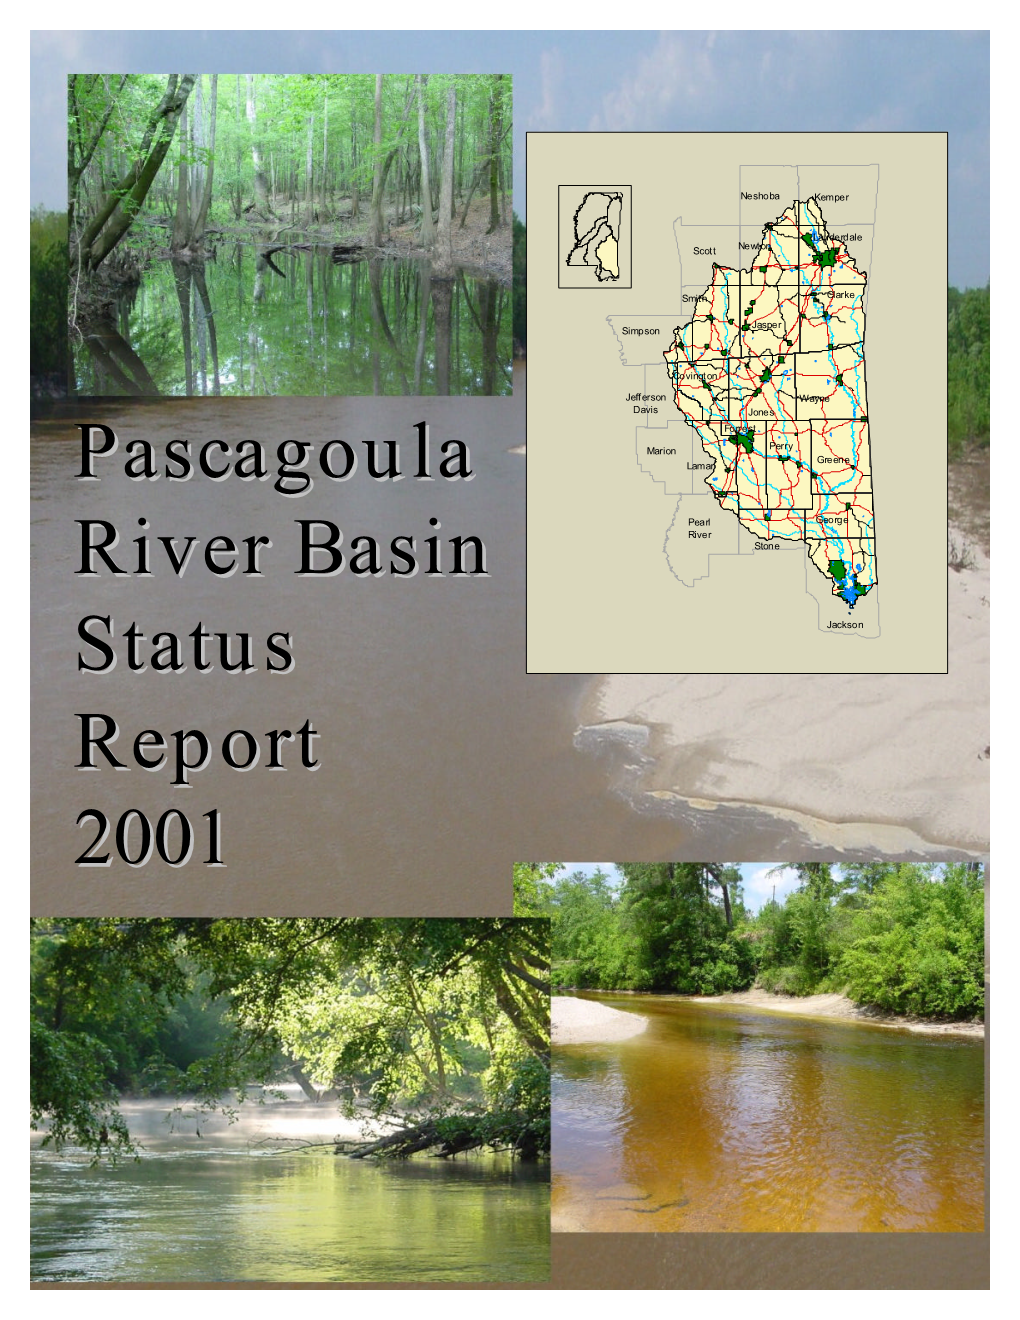 Pascagoula River Basin Status Report 2001